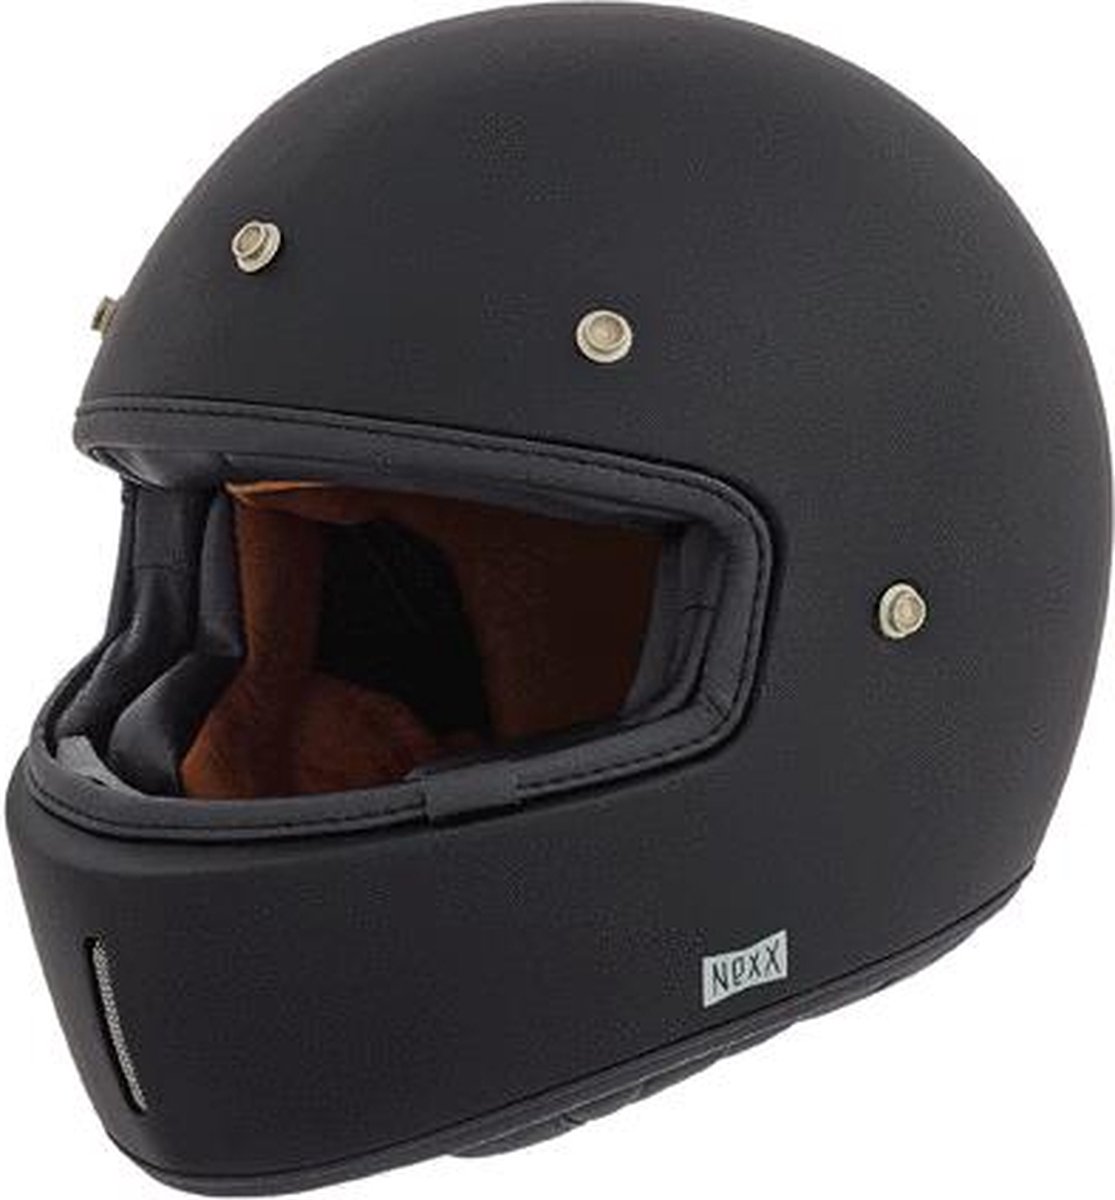 NEXX XG.100 PURIST BLACK MATTE XS - Maat XS - Helm